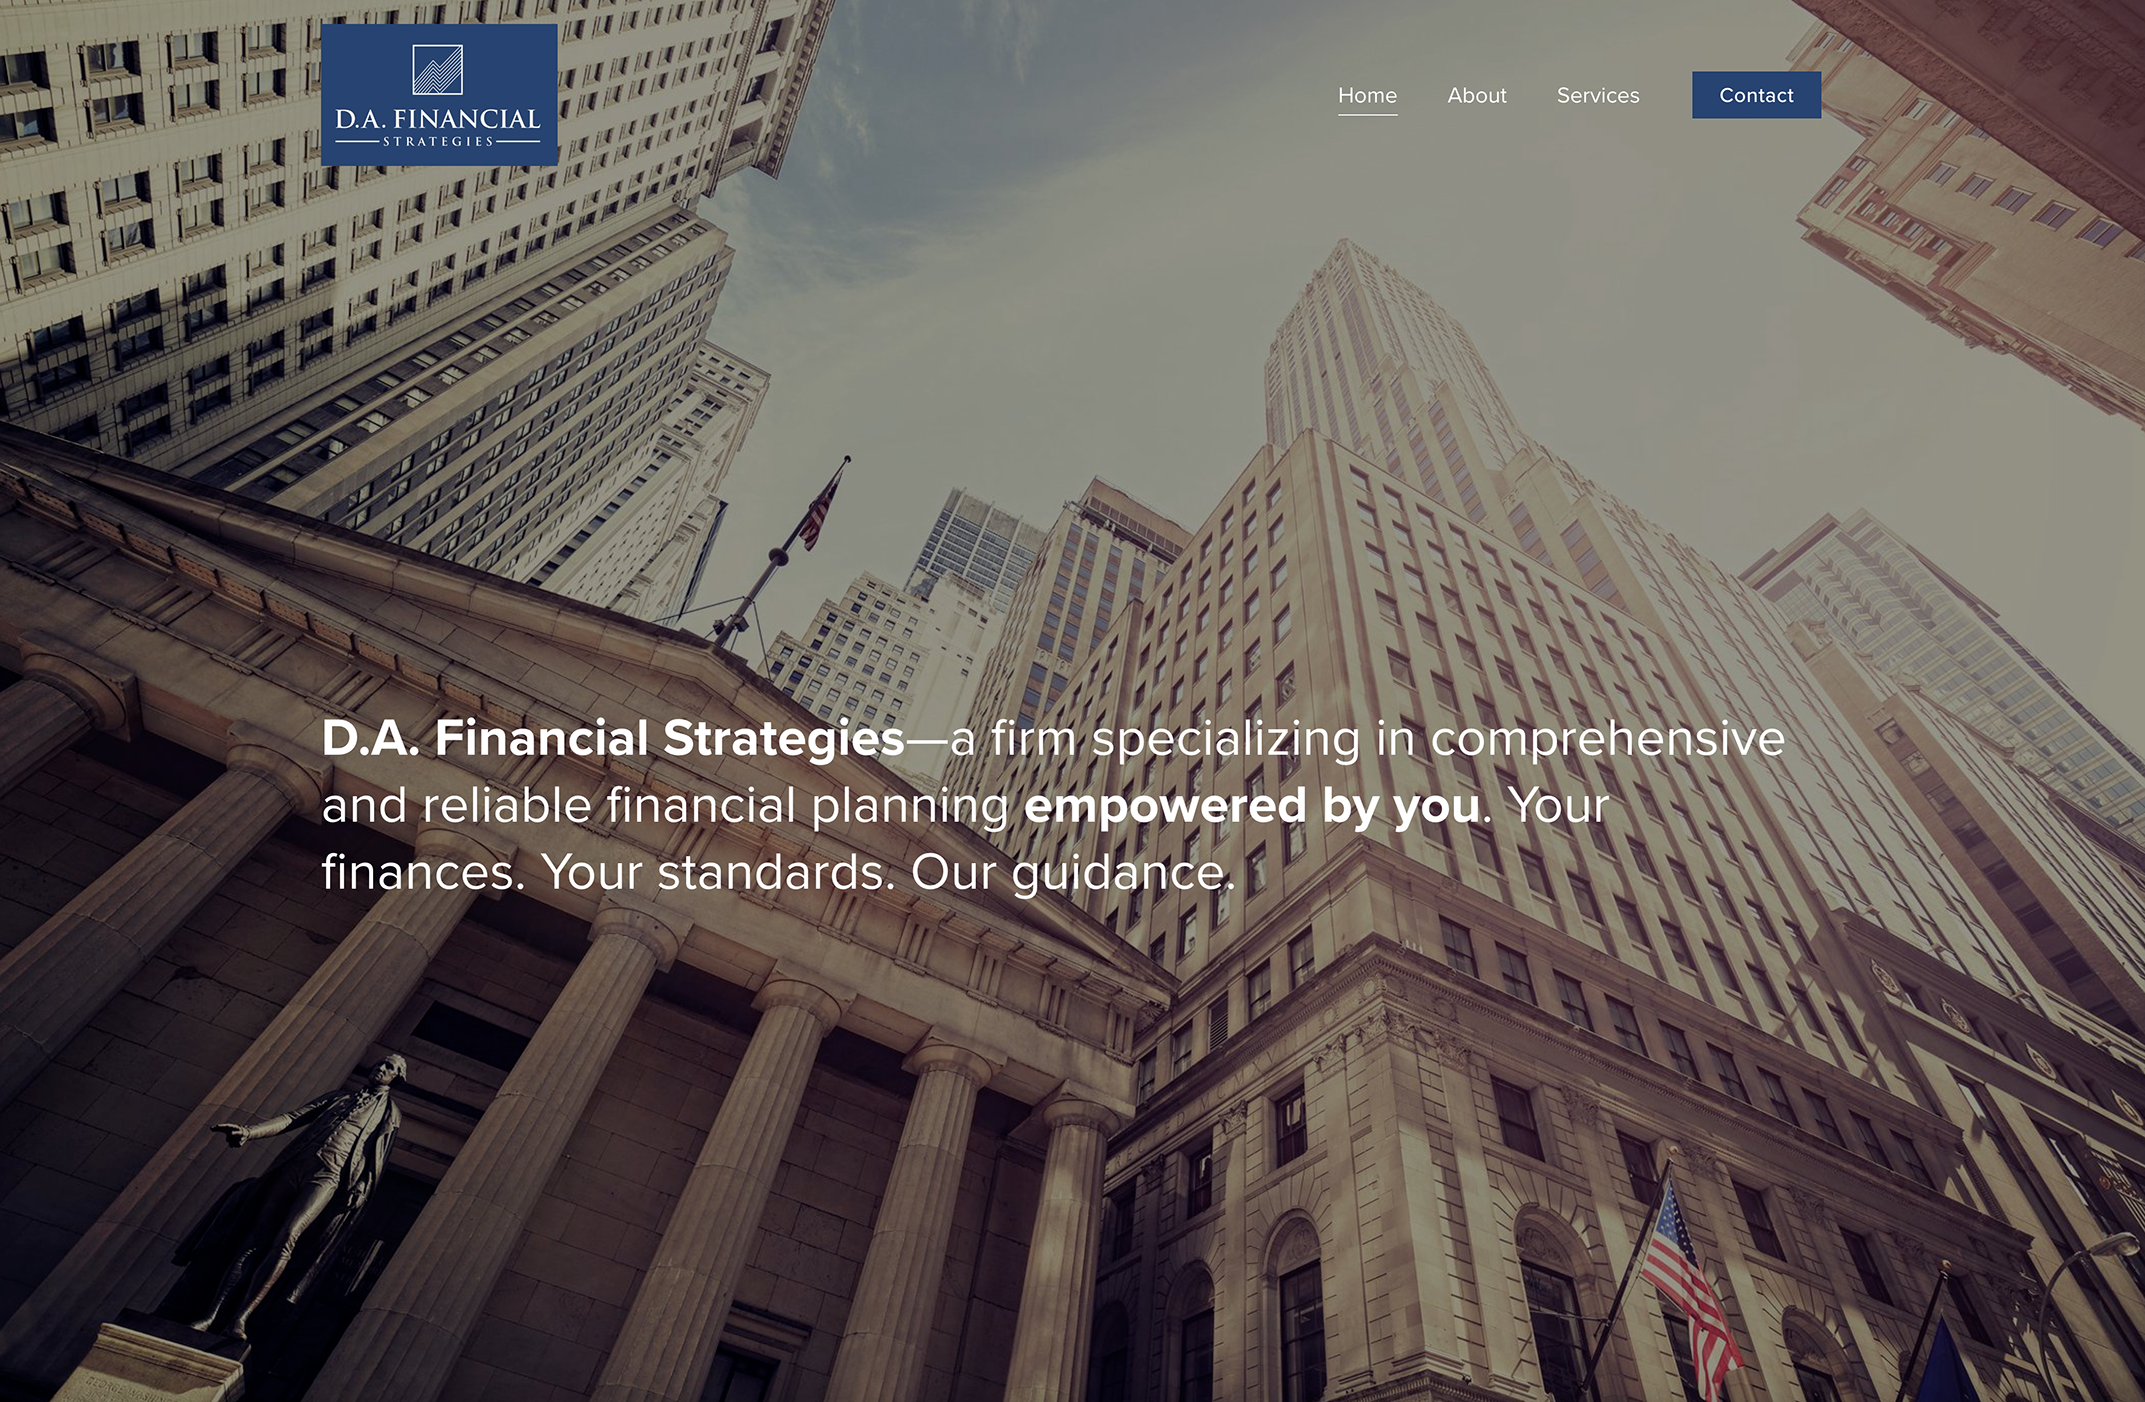 dafinancial website homepage.png